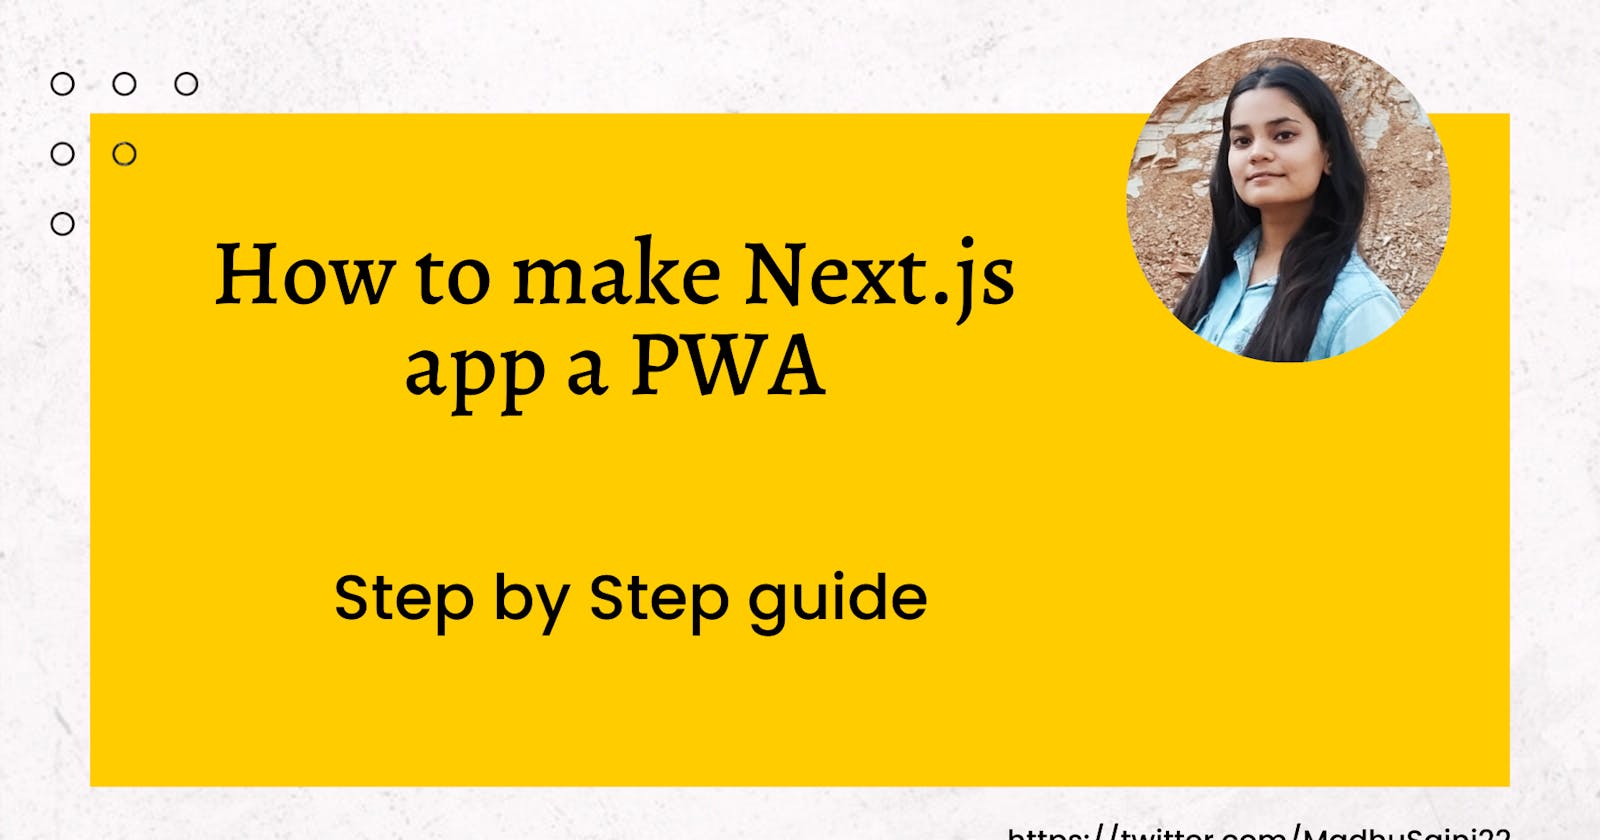 How to make Next.js app a PWA (Progressive Web App)